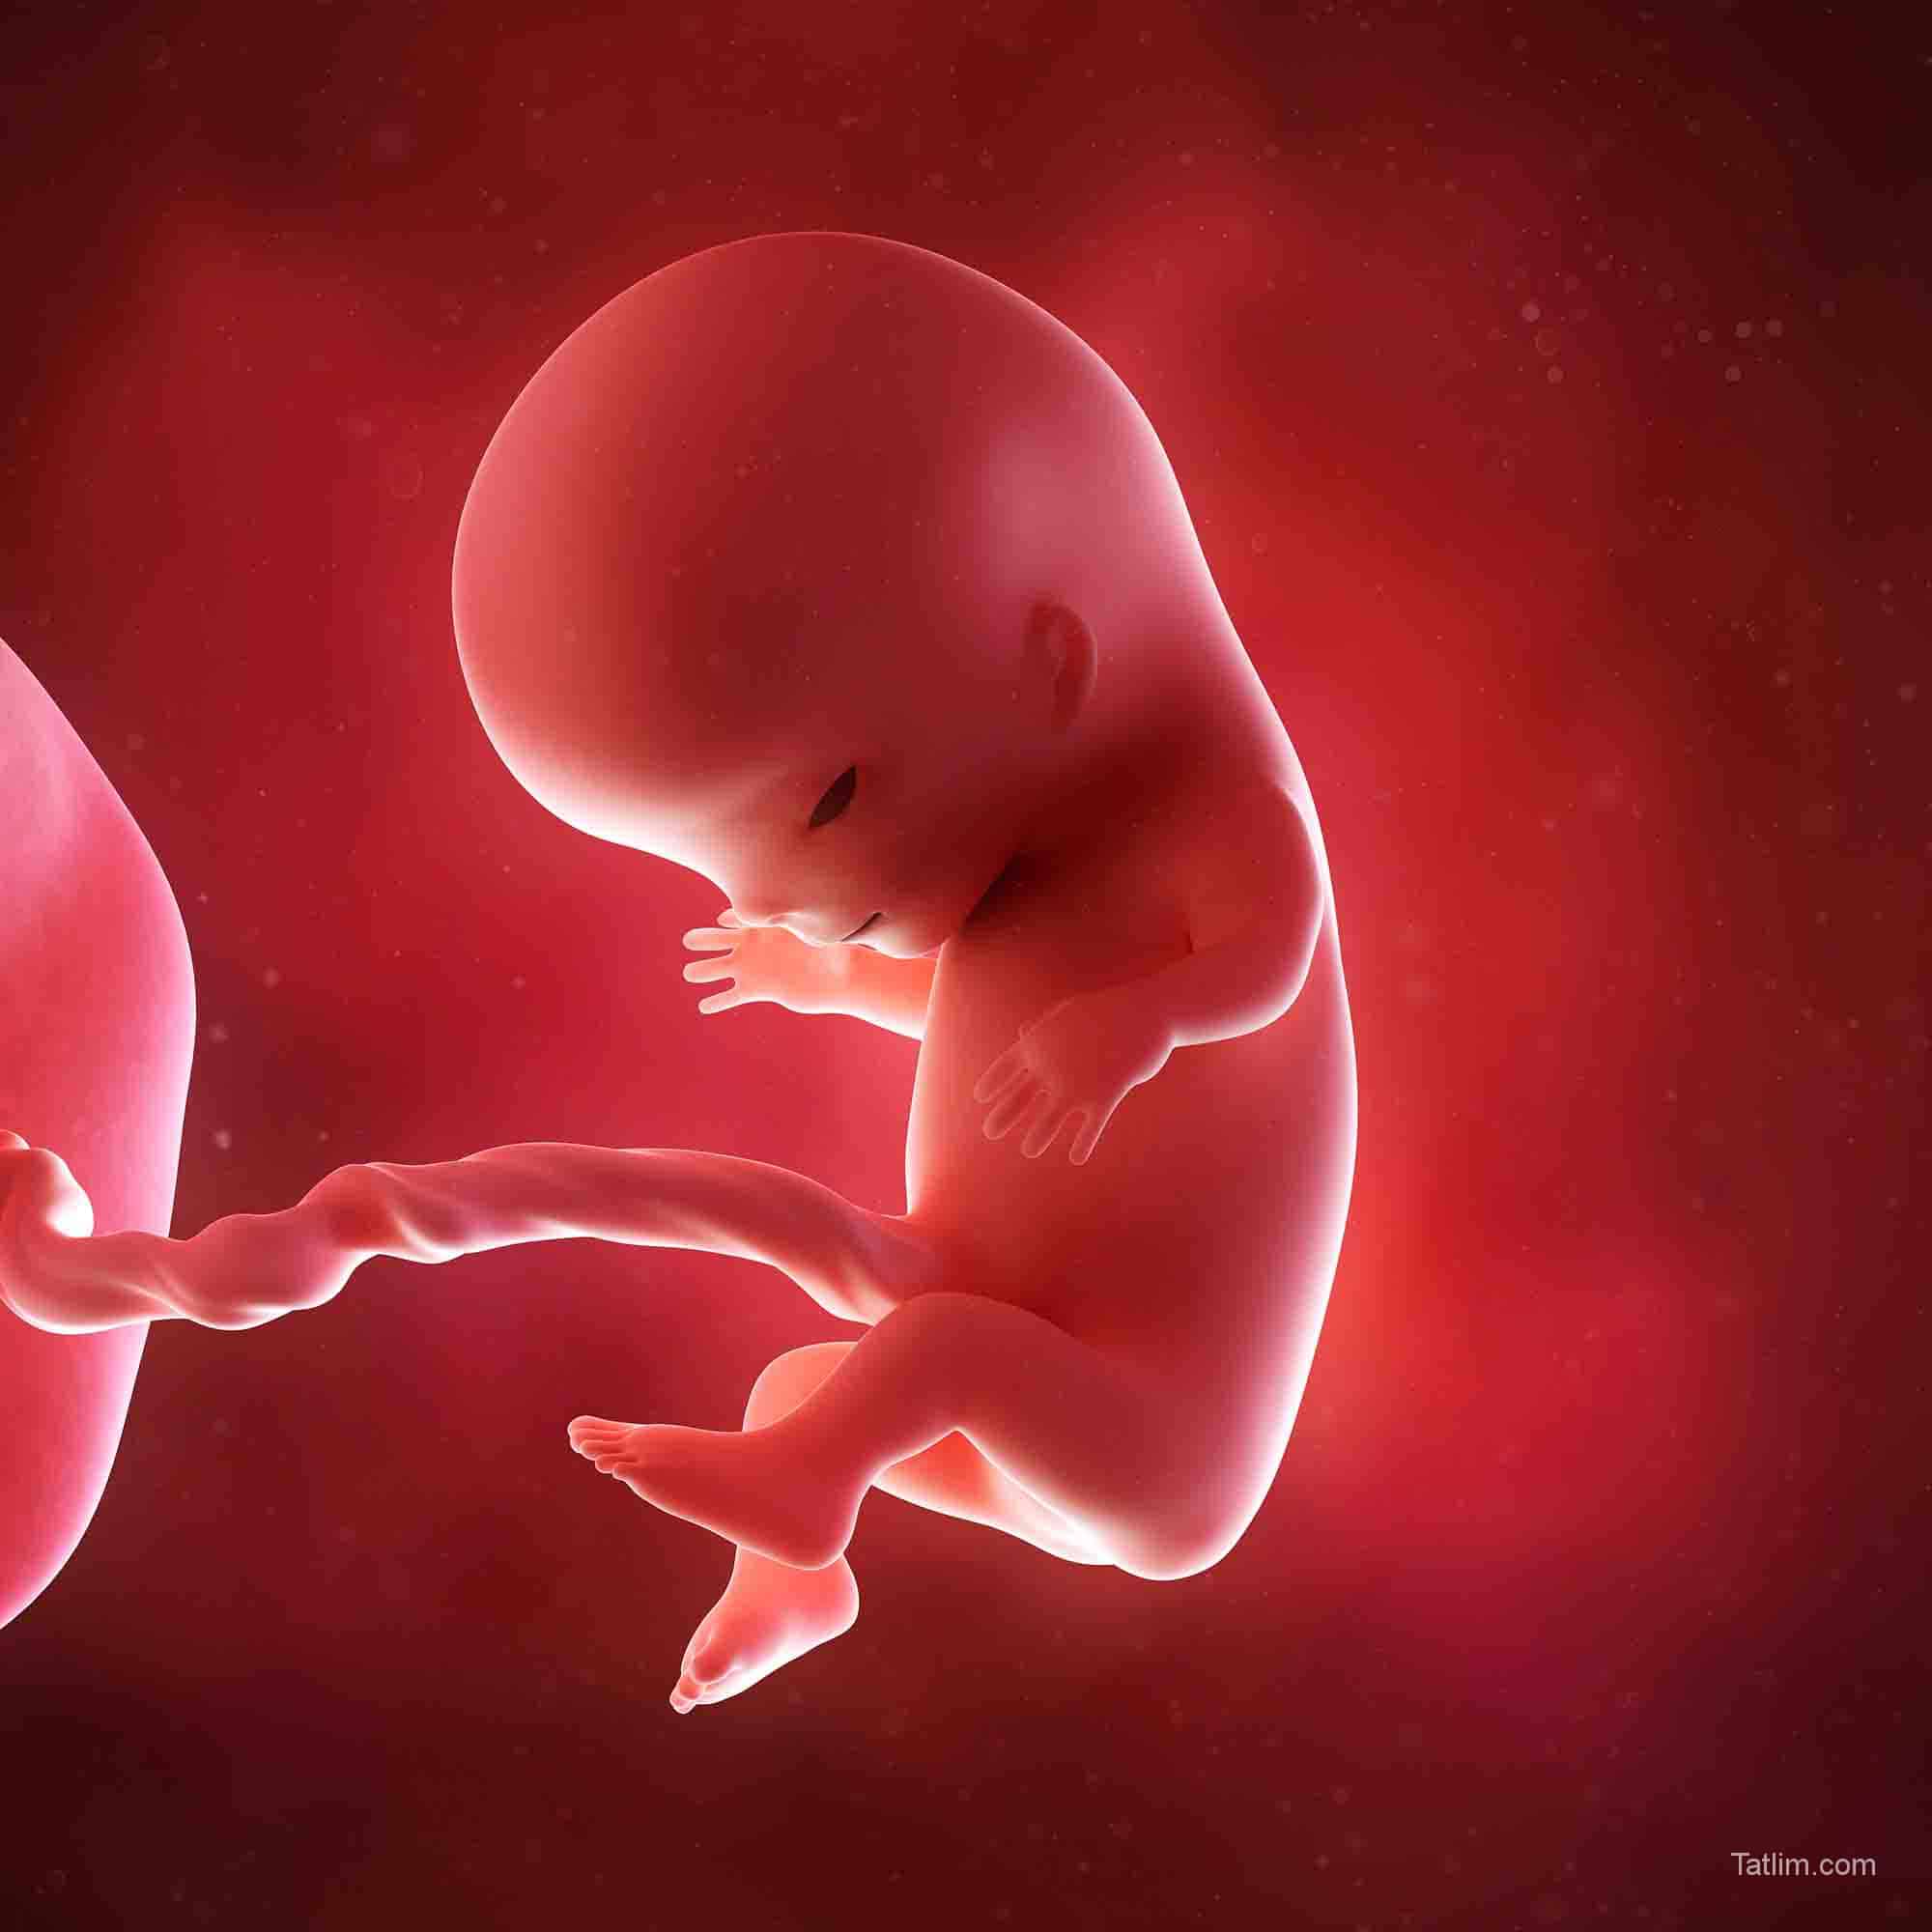 11 неделя календаря. Эмбрион на 11 неделе беременности. Ребёнок 11 недель беременности эмбрион. Плод на 11 акушерской неделе беременности. Плод на 11-12 неделе беременности.